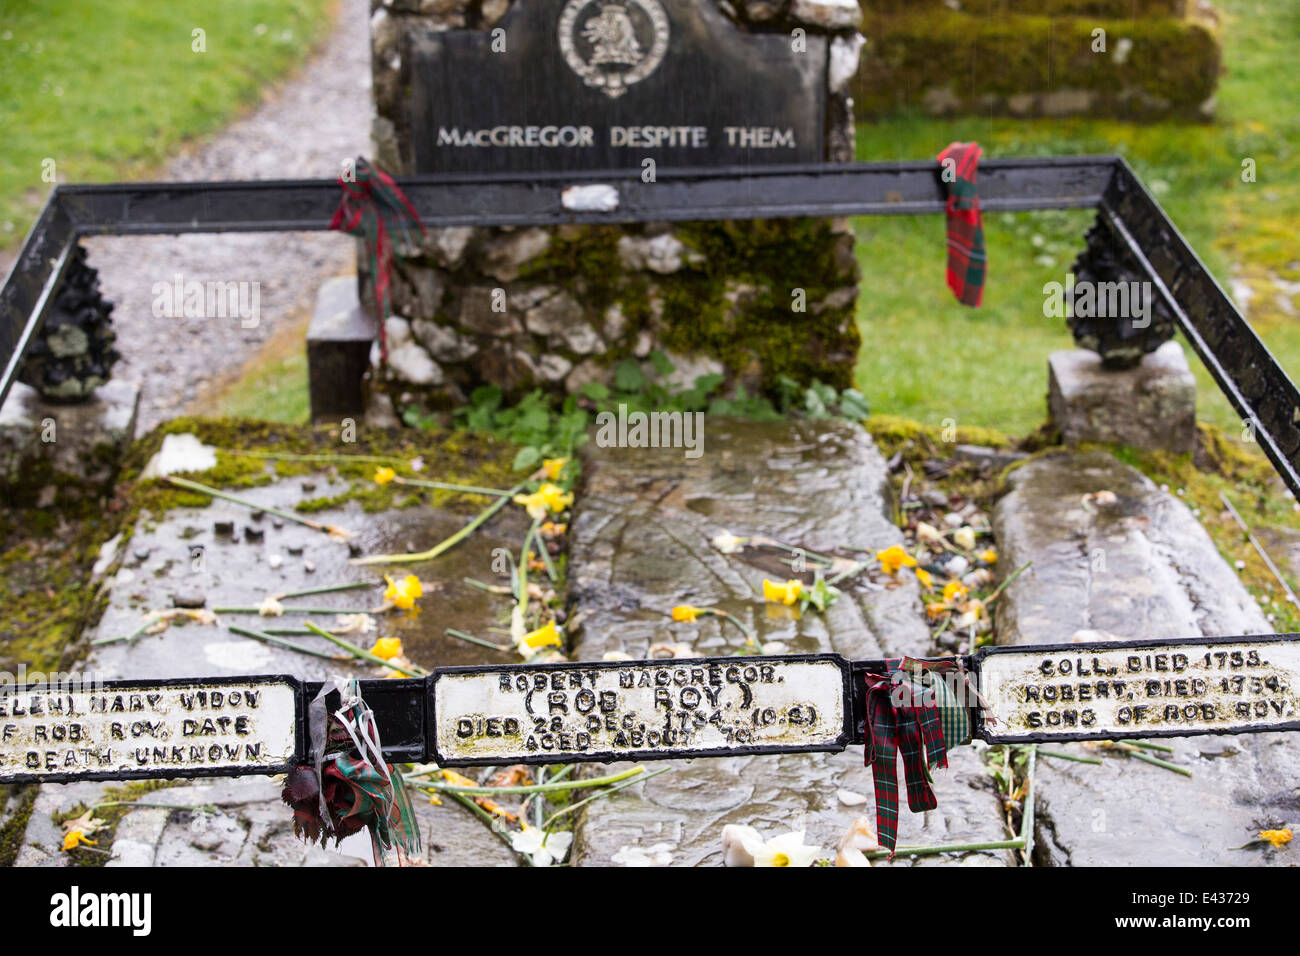 Uno dei tre possibili luoghi di sepoltura per Rob Roy, un eroe scozzese, vicino Balquhidder, Scotland, Regno Unito. Foto Stock